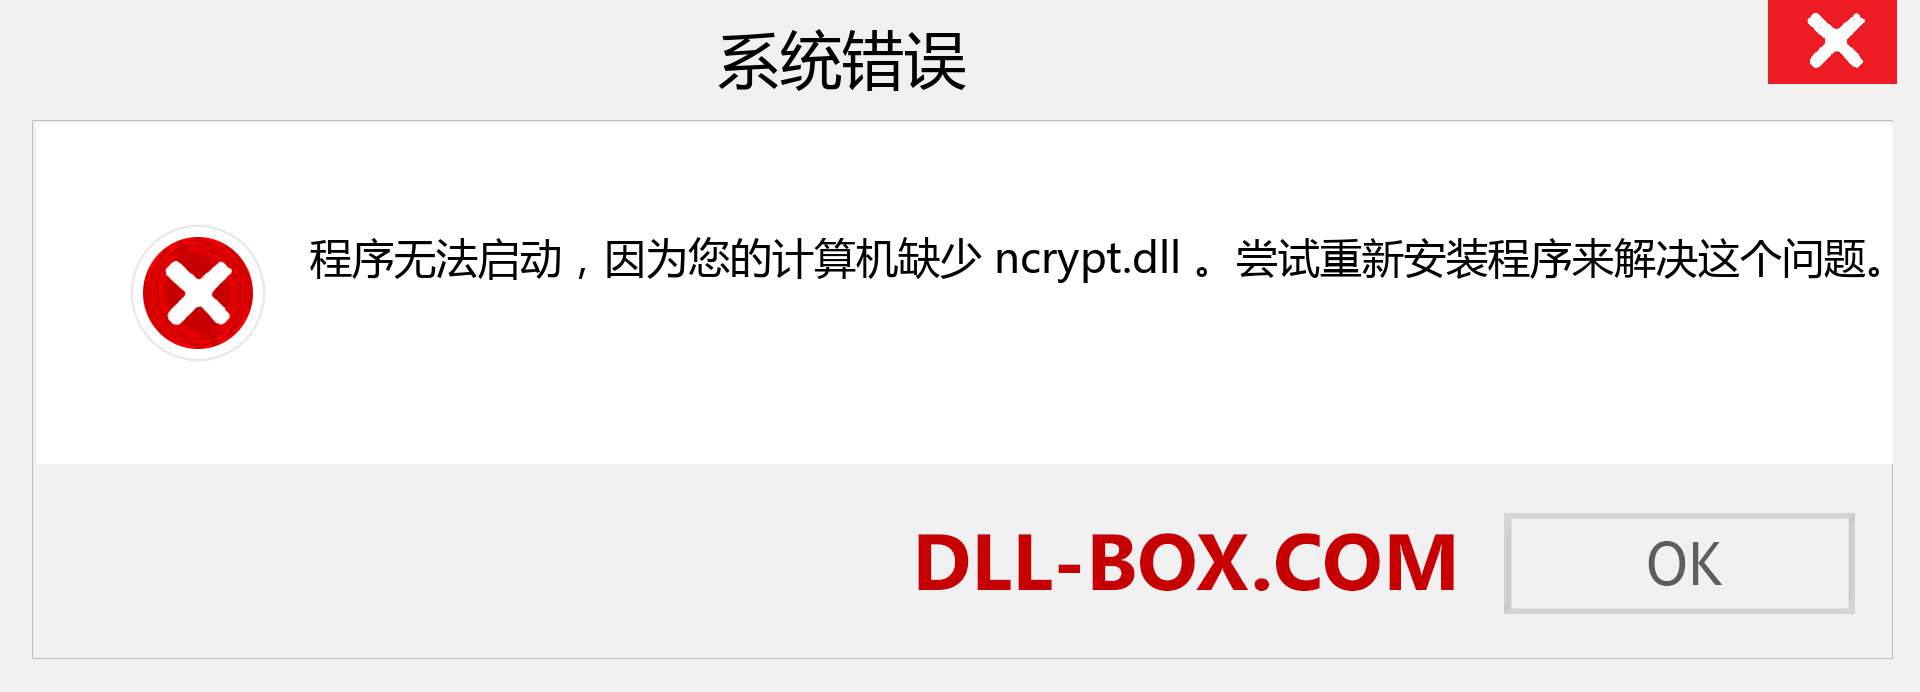 ncrypt.dll 文件丢失？。 适用于 Windows 7、8、10 的下载 - 修复 Windows、照片、图像上的 ncrypt dll 丢失错误